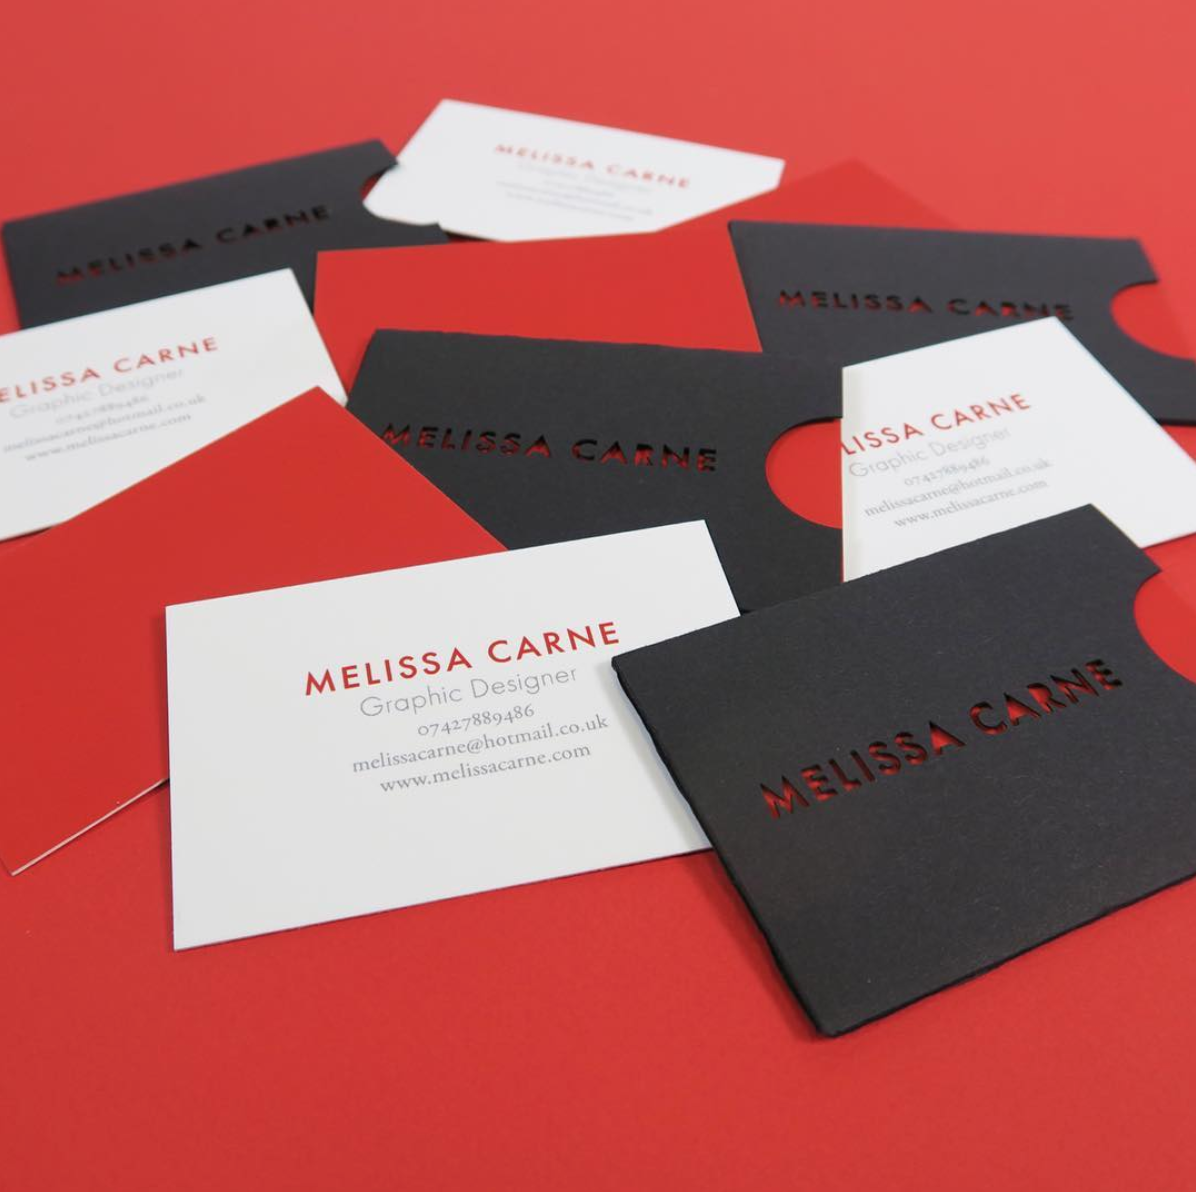 melissa carne freelance graphic designer business cards